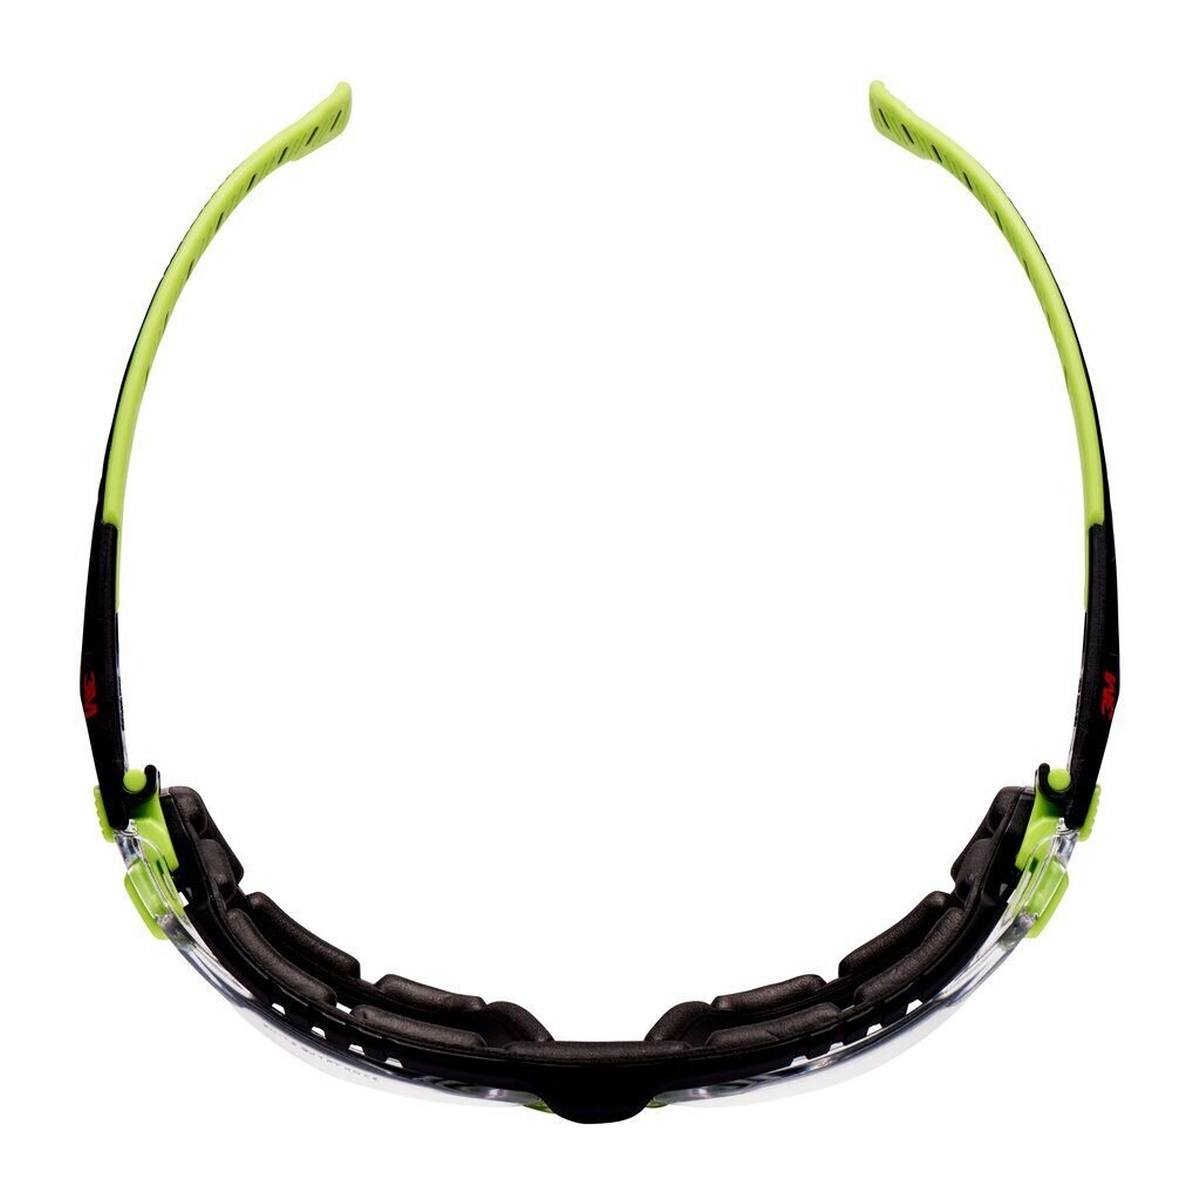 3M Solus 1000 Schutzbrille, grün/schwarze Bügel, Scotchgard Anti-Fog-/Antikratz-Beschichtung (K&N), transparente Scheibe, Schaumrahmen und Kopfband, S1201SGAFKT-EU